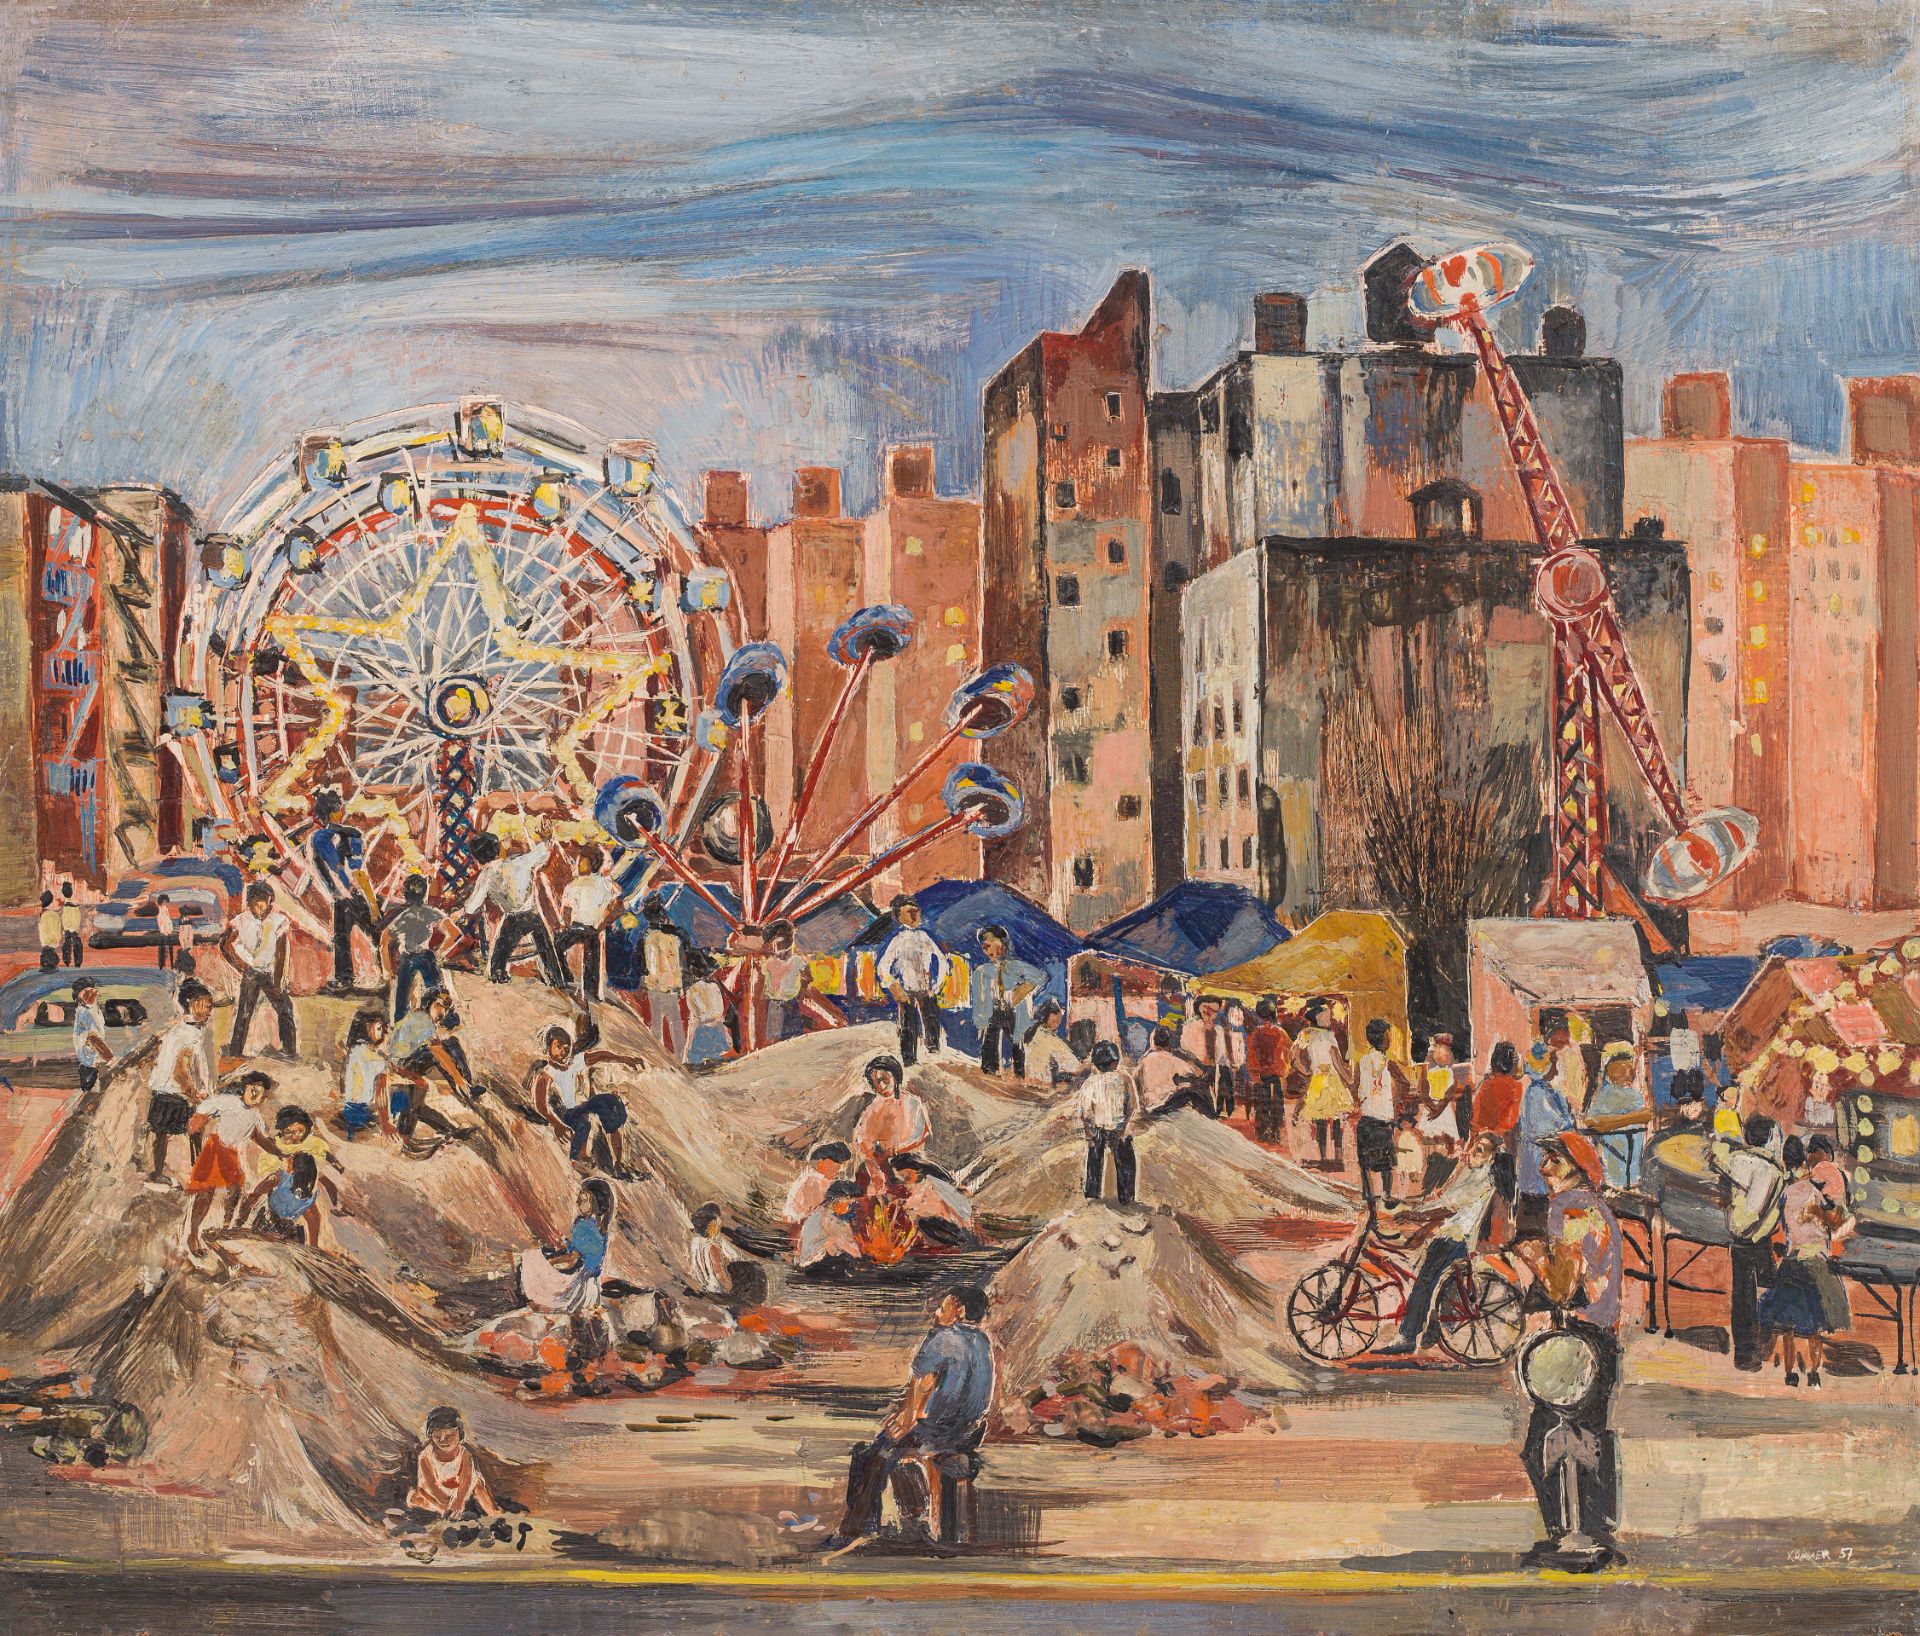 Edith Kramer: Fairground in Delancey Street, Manhattan, New York